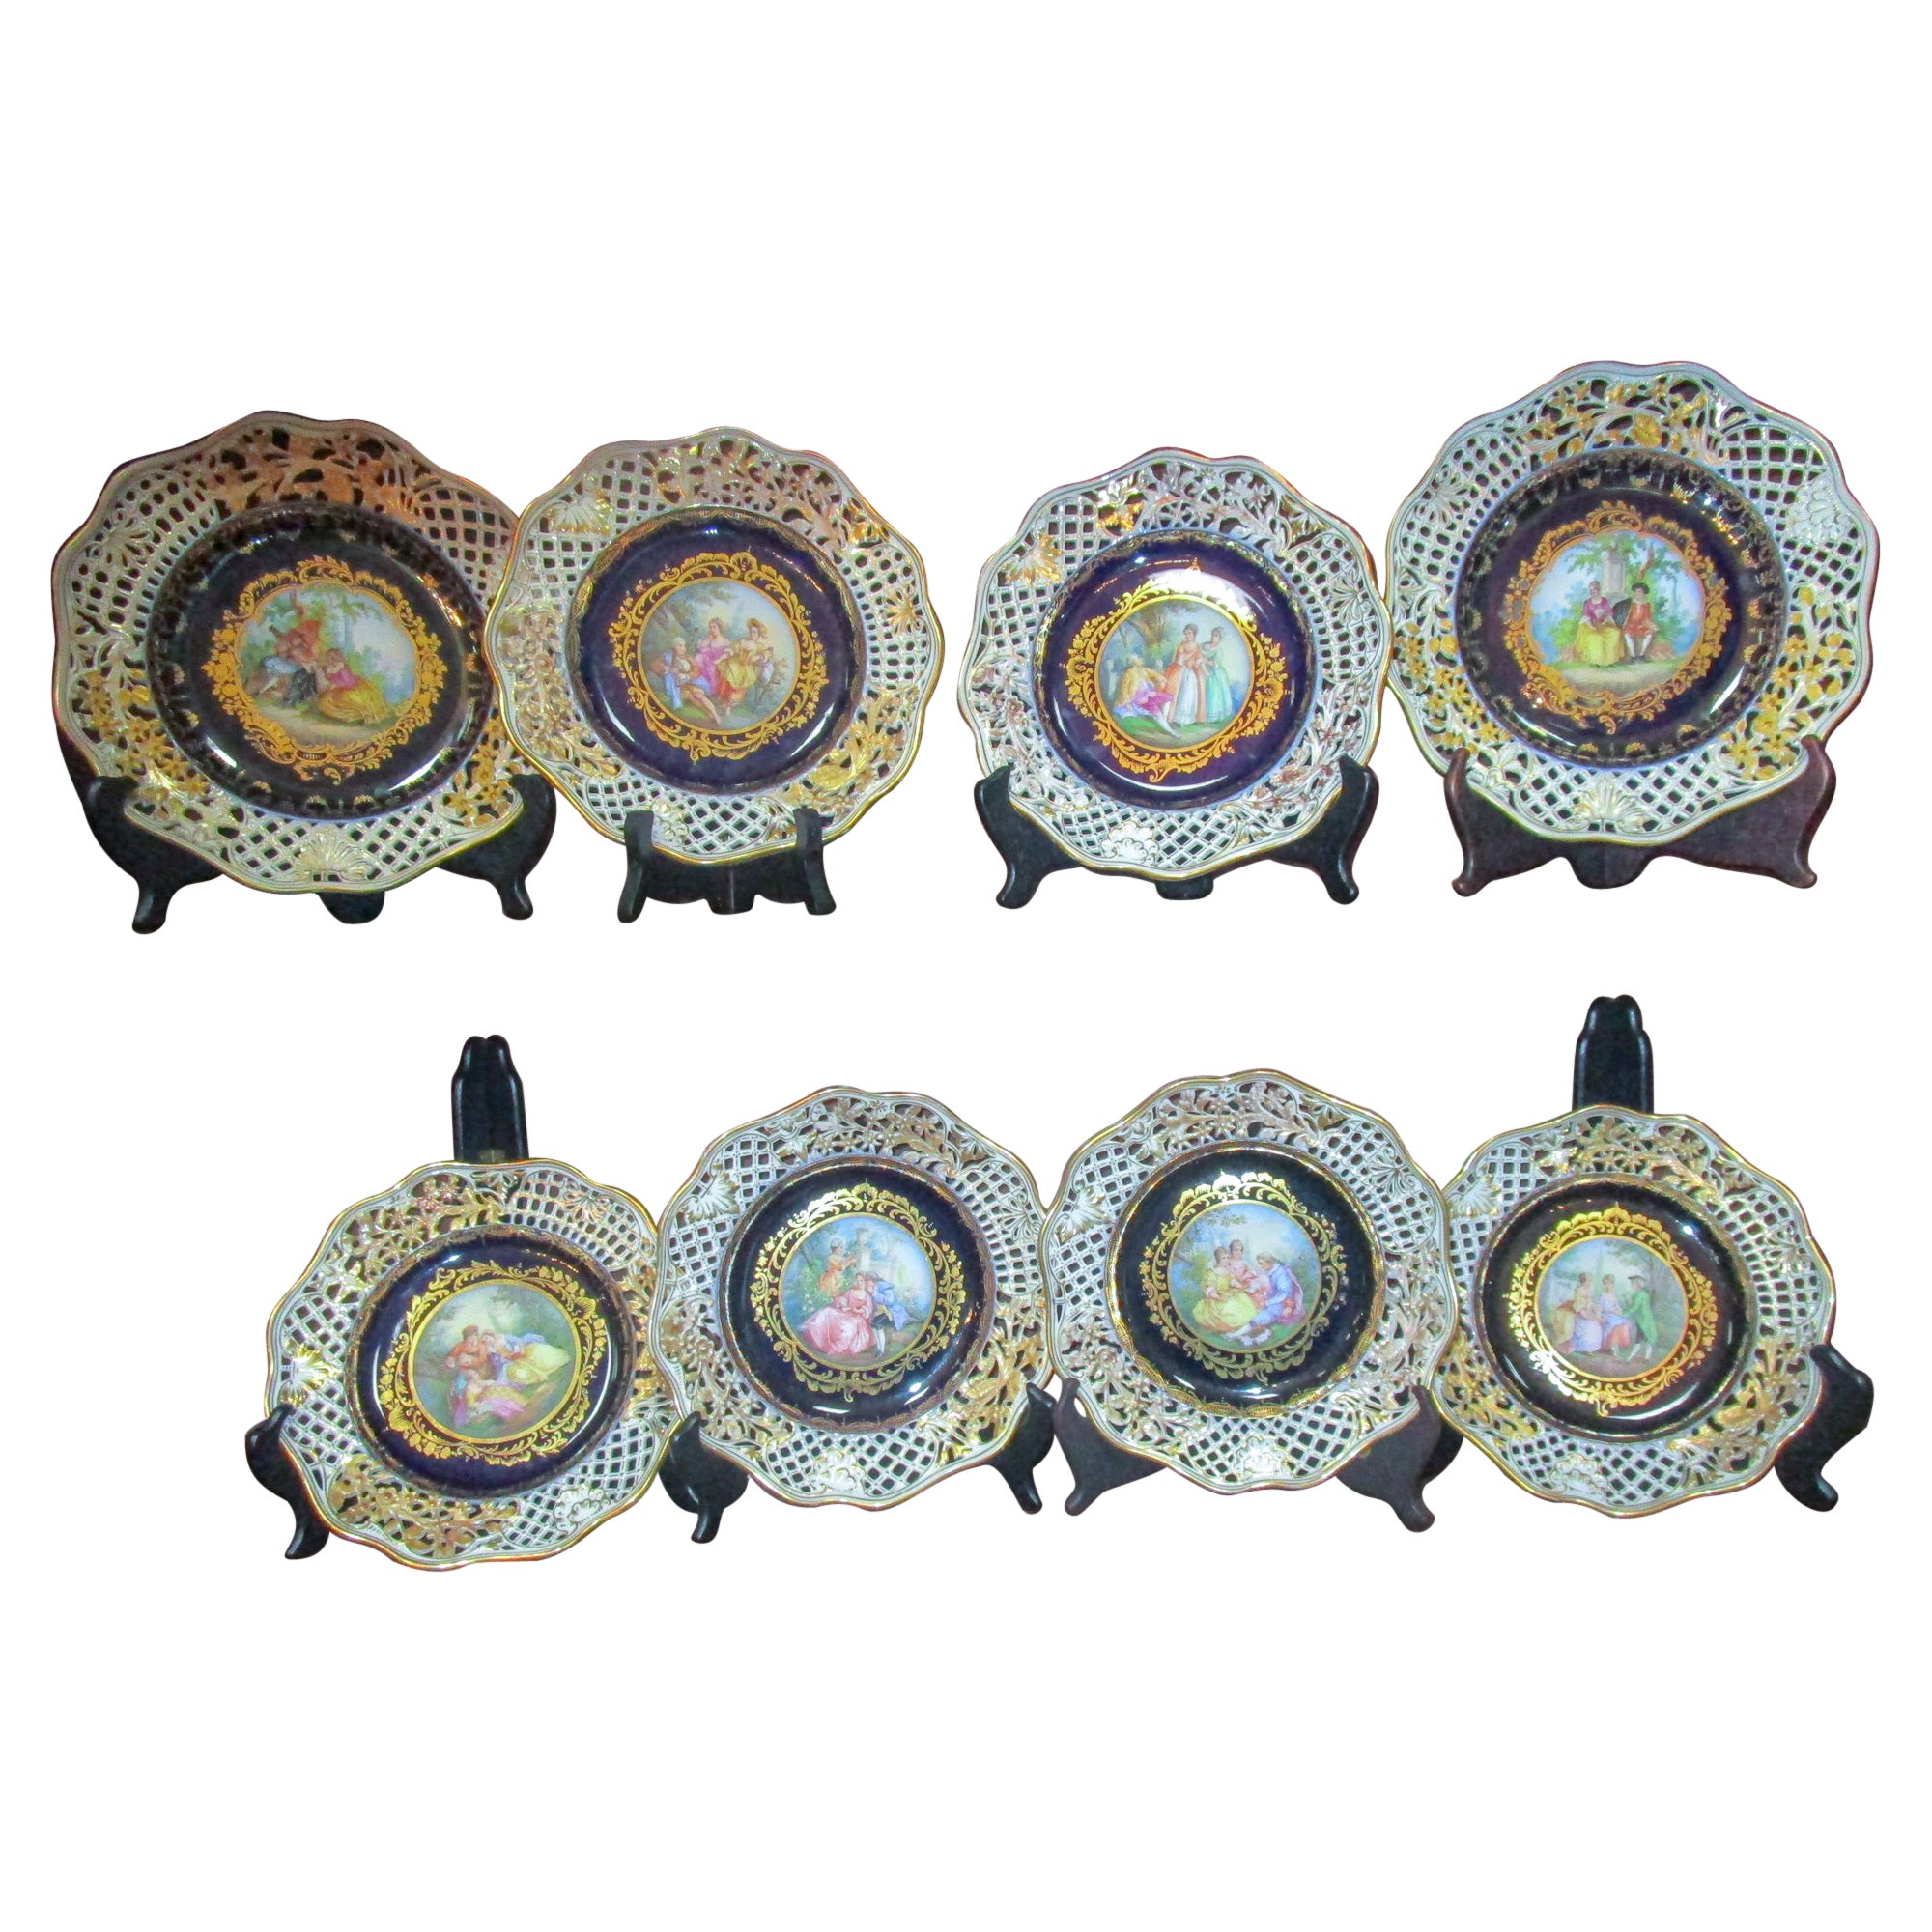 8 assiettes en porcelaine réticulée cobalt de Meissen, Allemagne, 19e siècle, avec scènes de couronnement